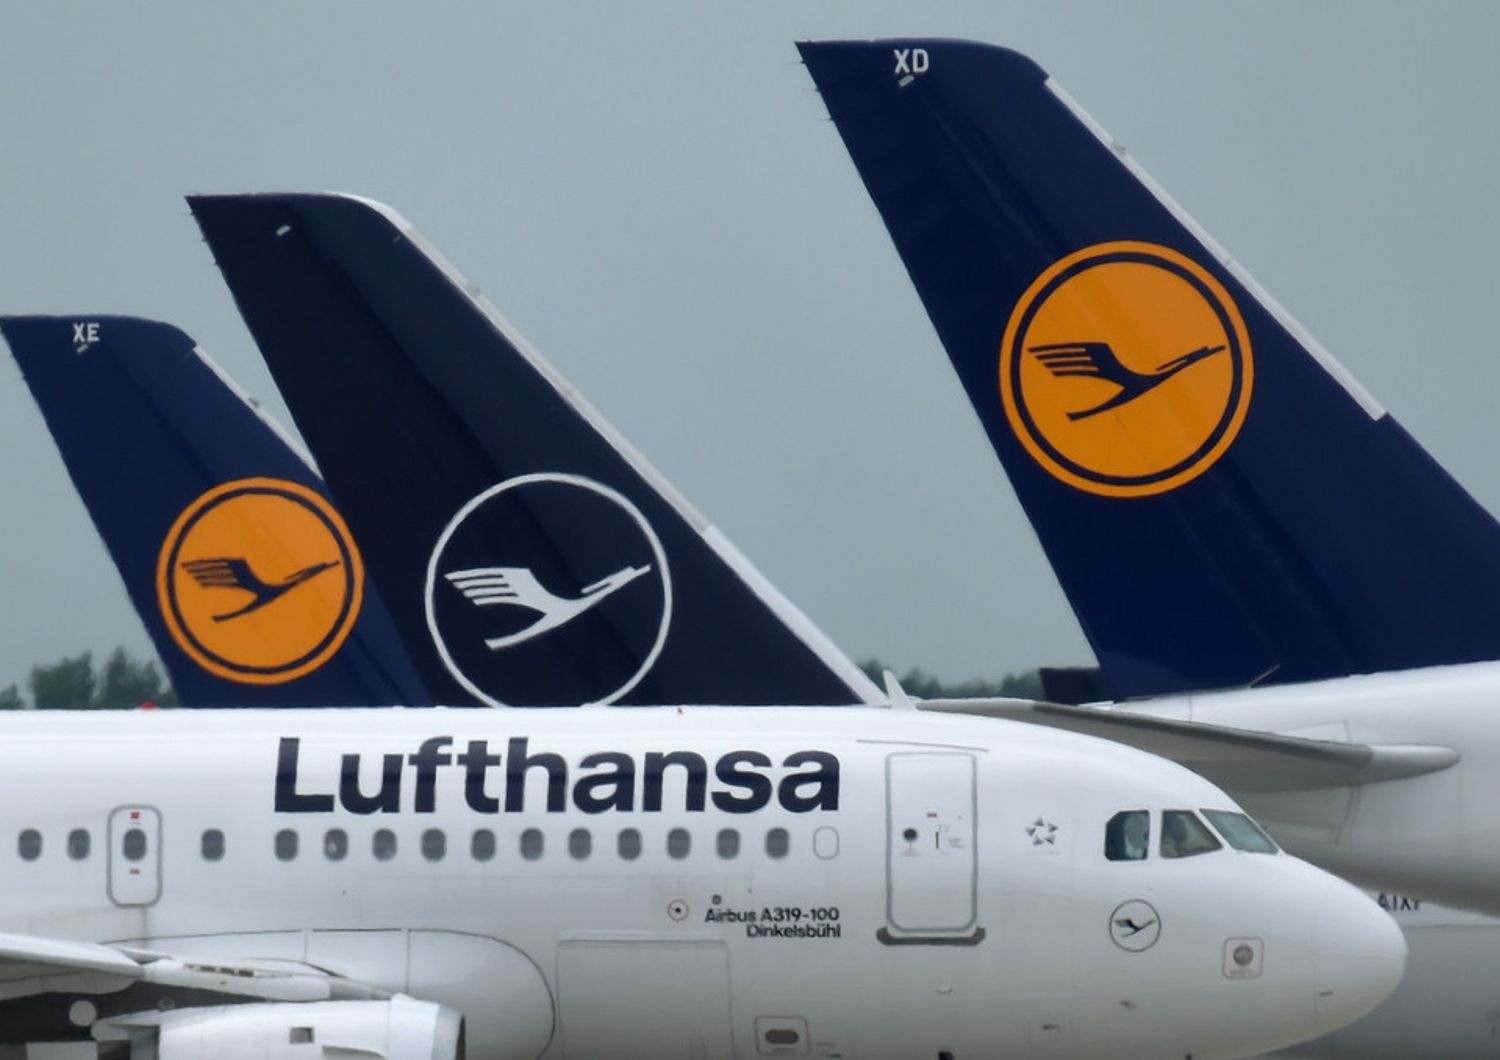 Aerei della Lufthansa nell'aeroporto di Monaco di Baviera